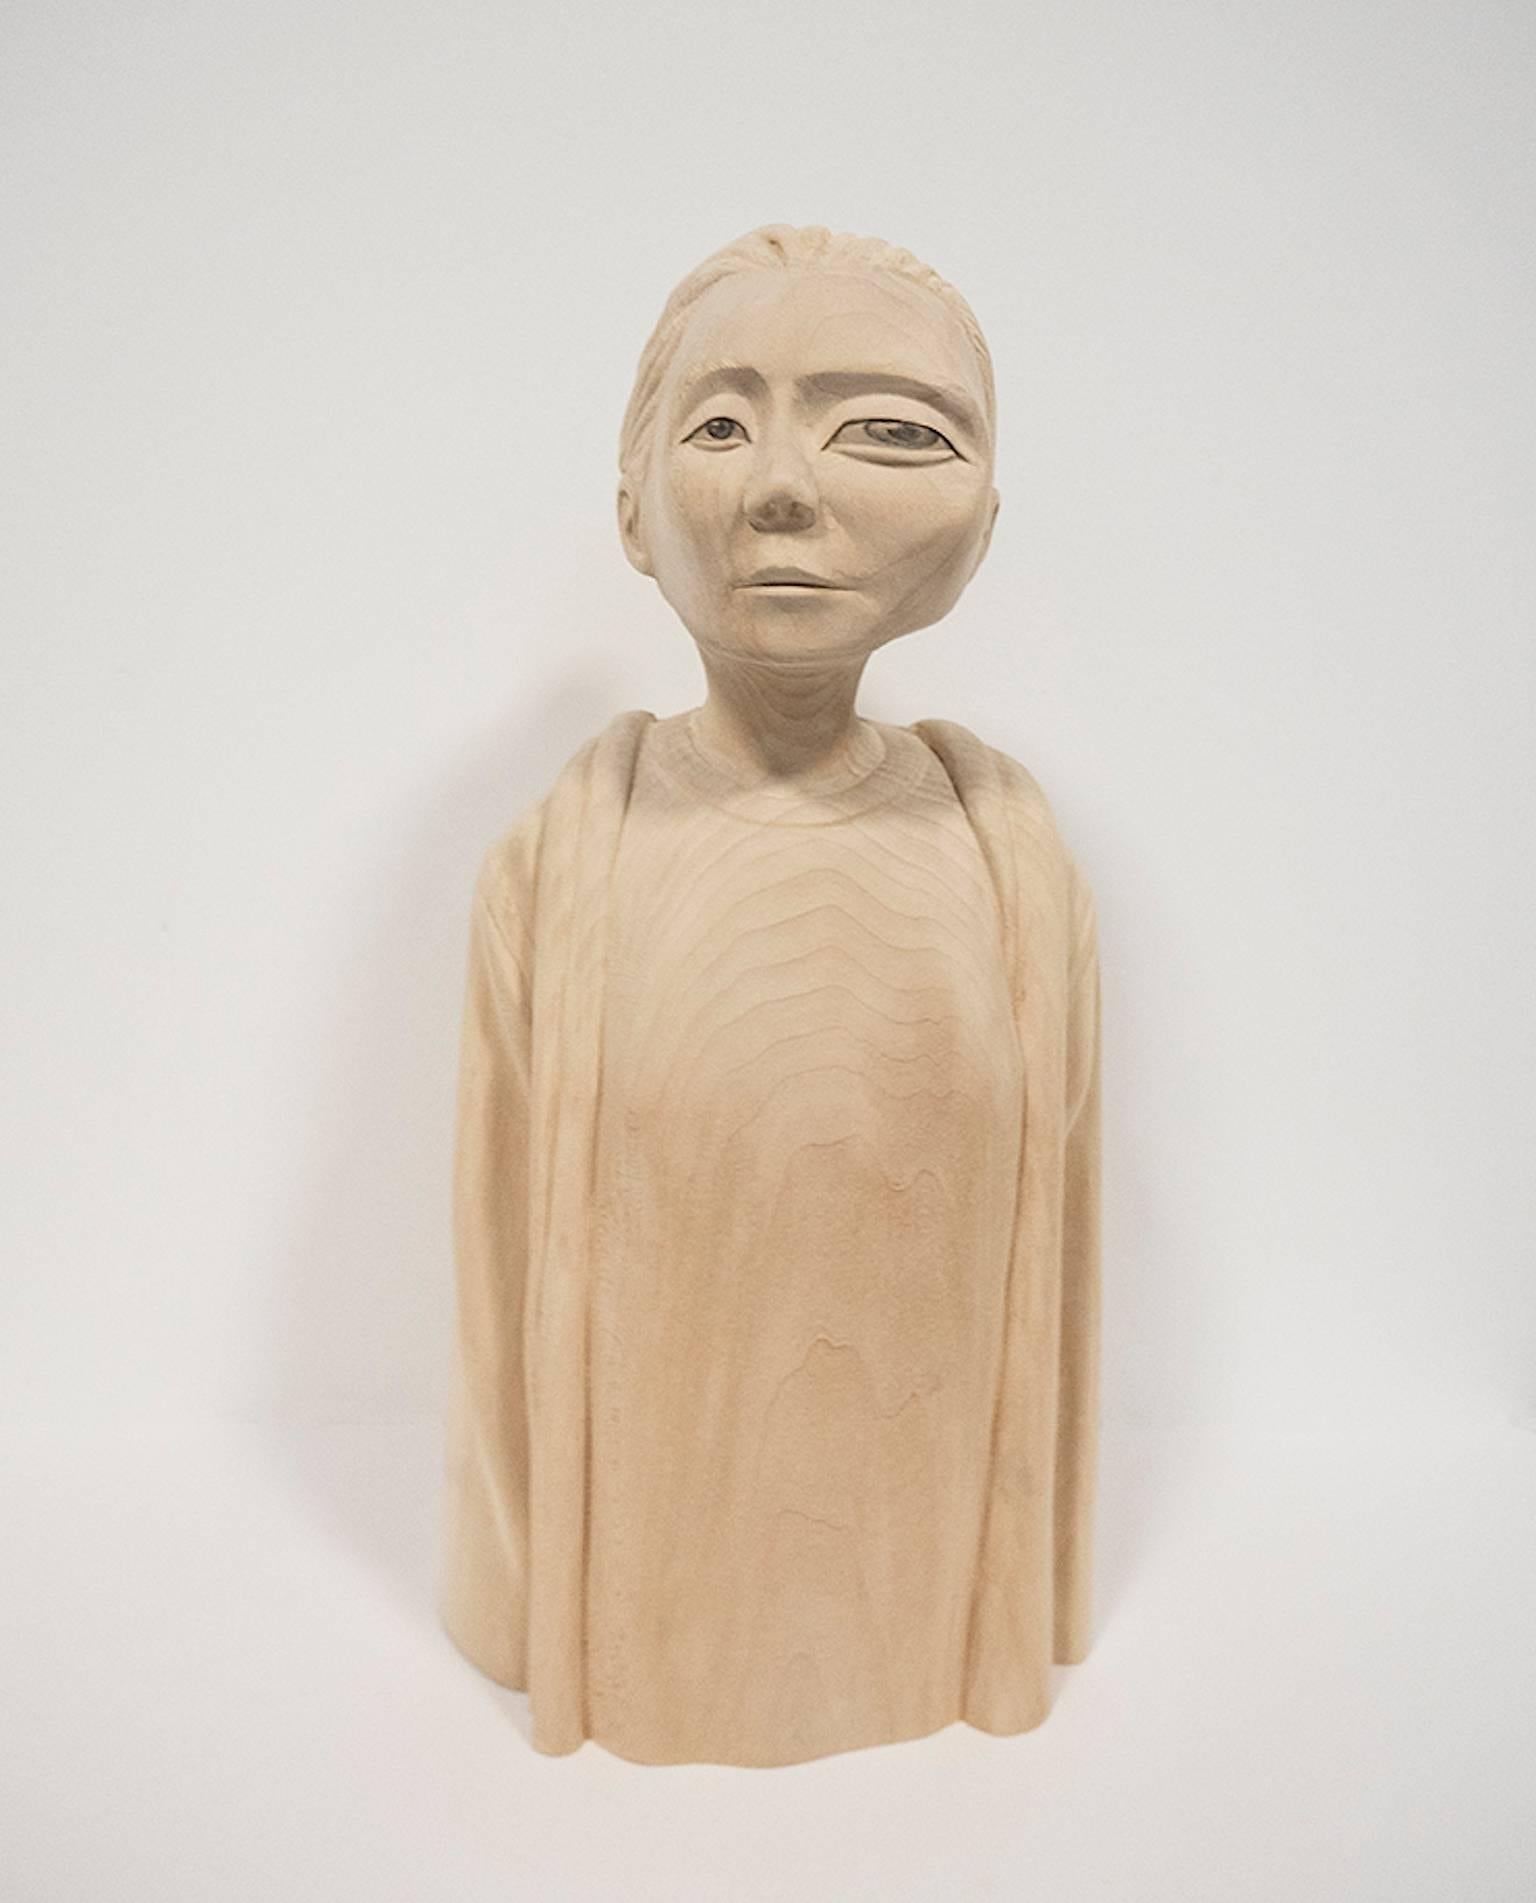 Figurative Sculpture Paul Kaptein - "Rain" Sculpture en bois sculptée à la main, contemporaine, figurative, surréaliste.